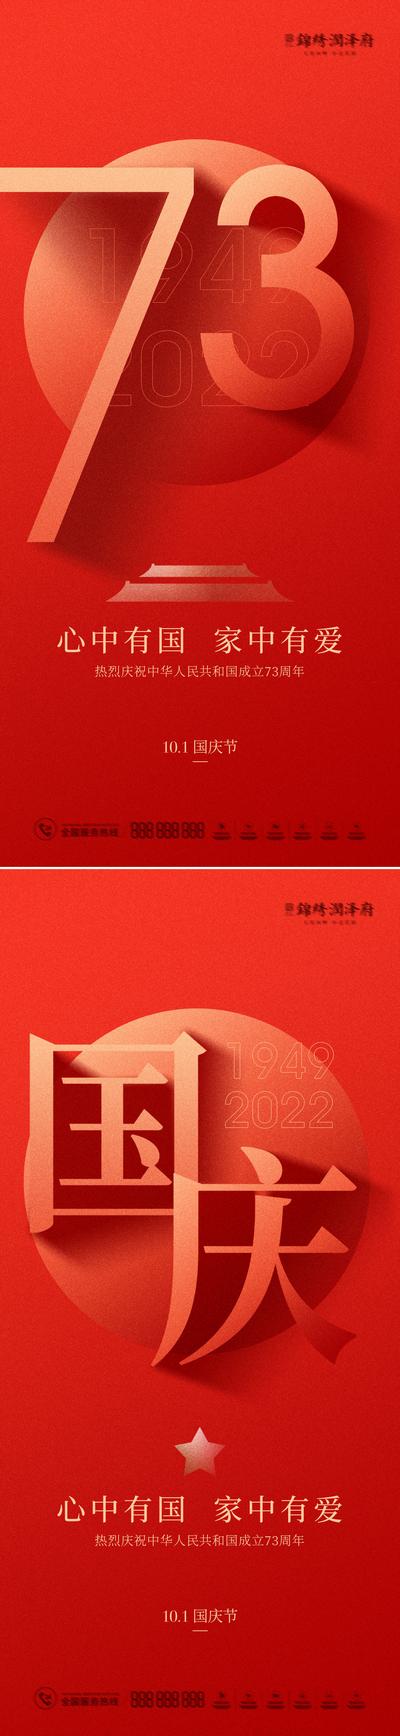 南门网 海报 房地产 公历节日 国庆节 73周年 数字 文字 红金 系列